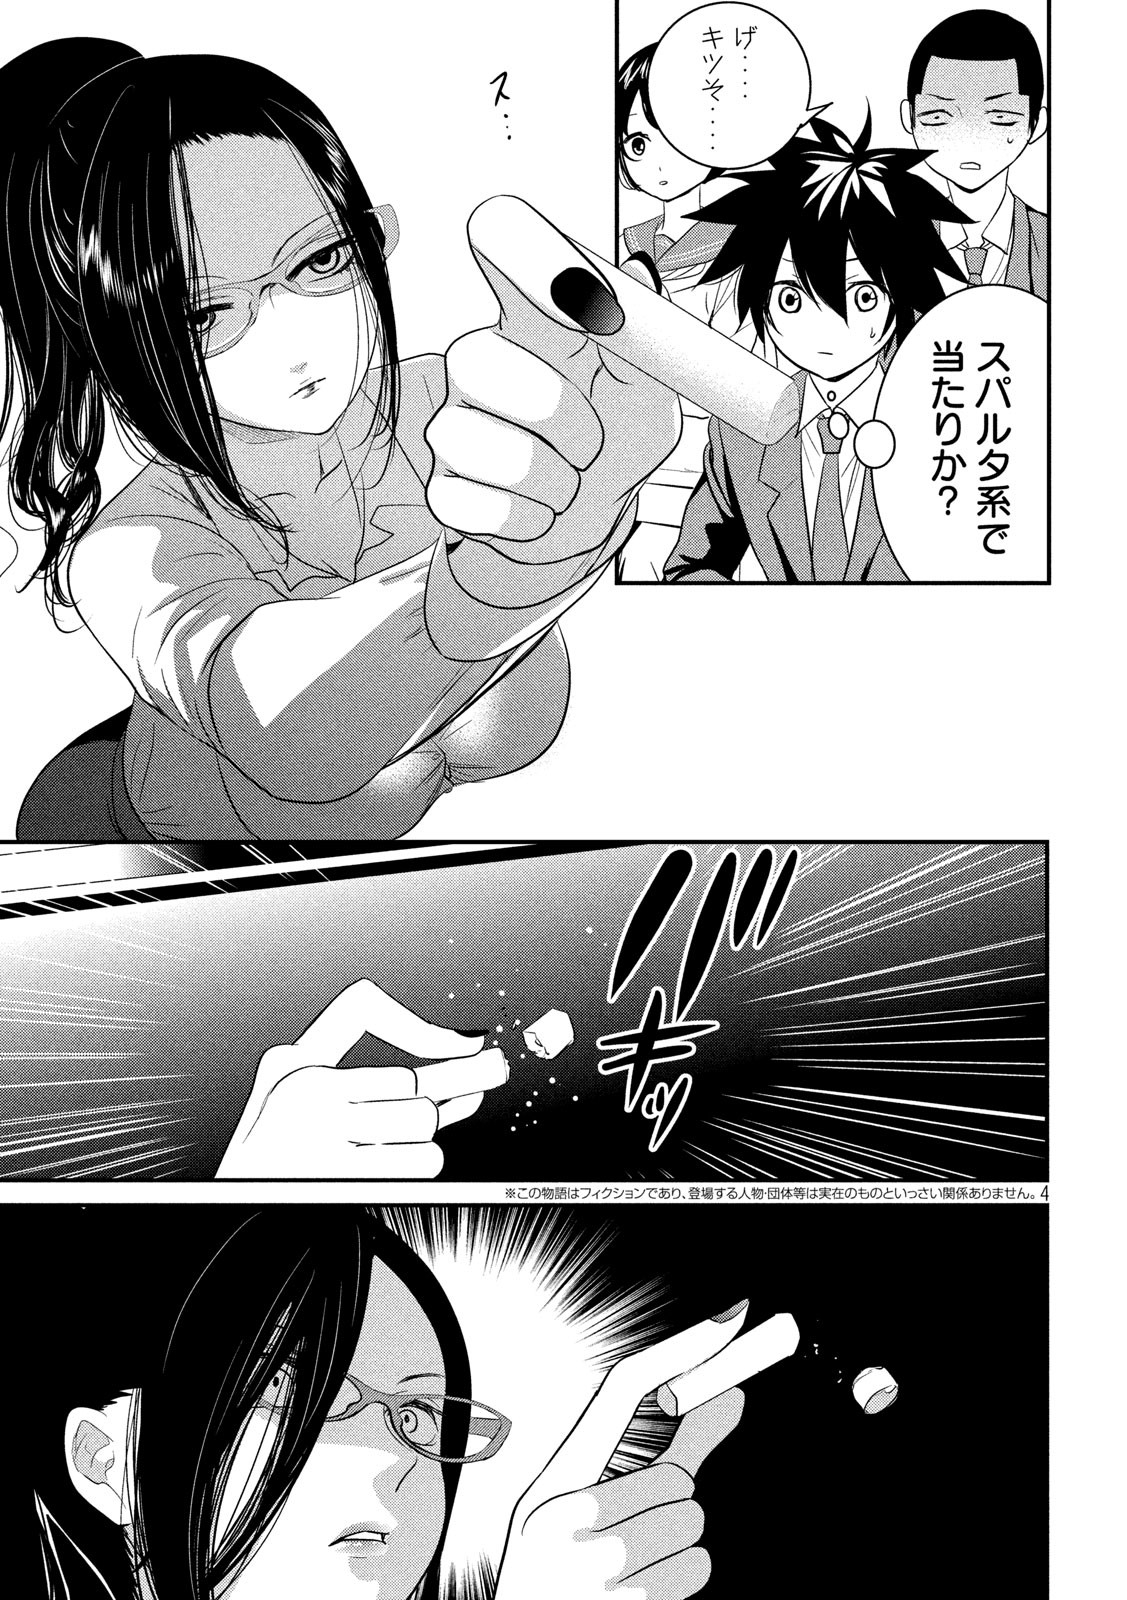 Eigo ×× Sensei - Chapter 1 - Page 4